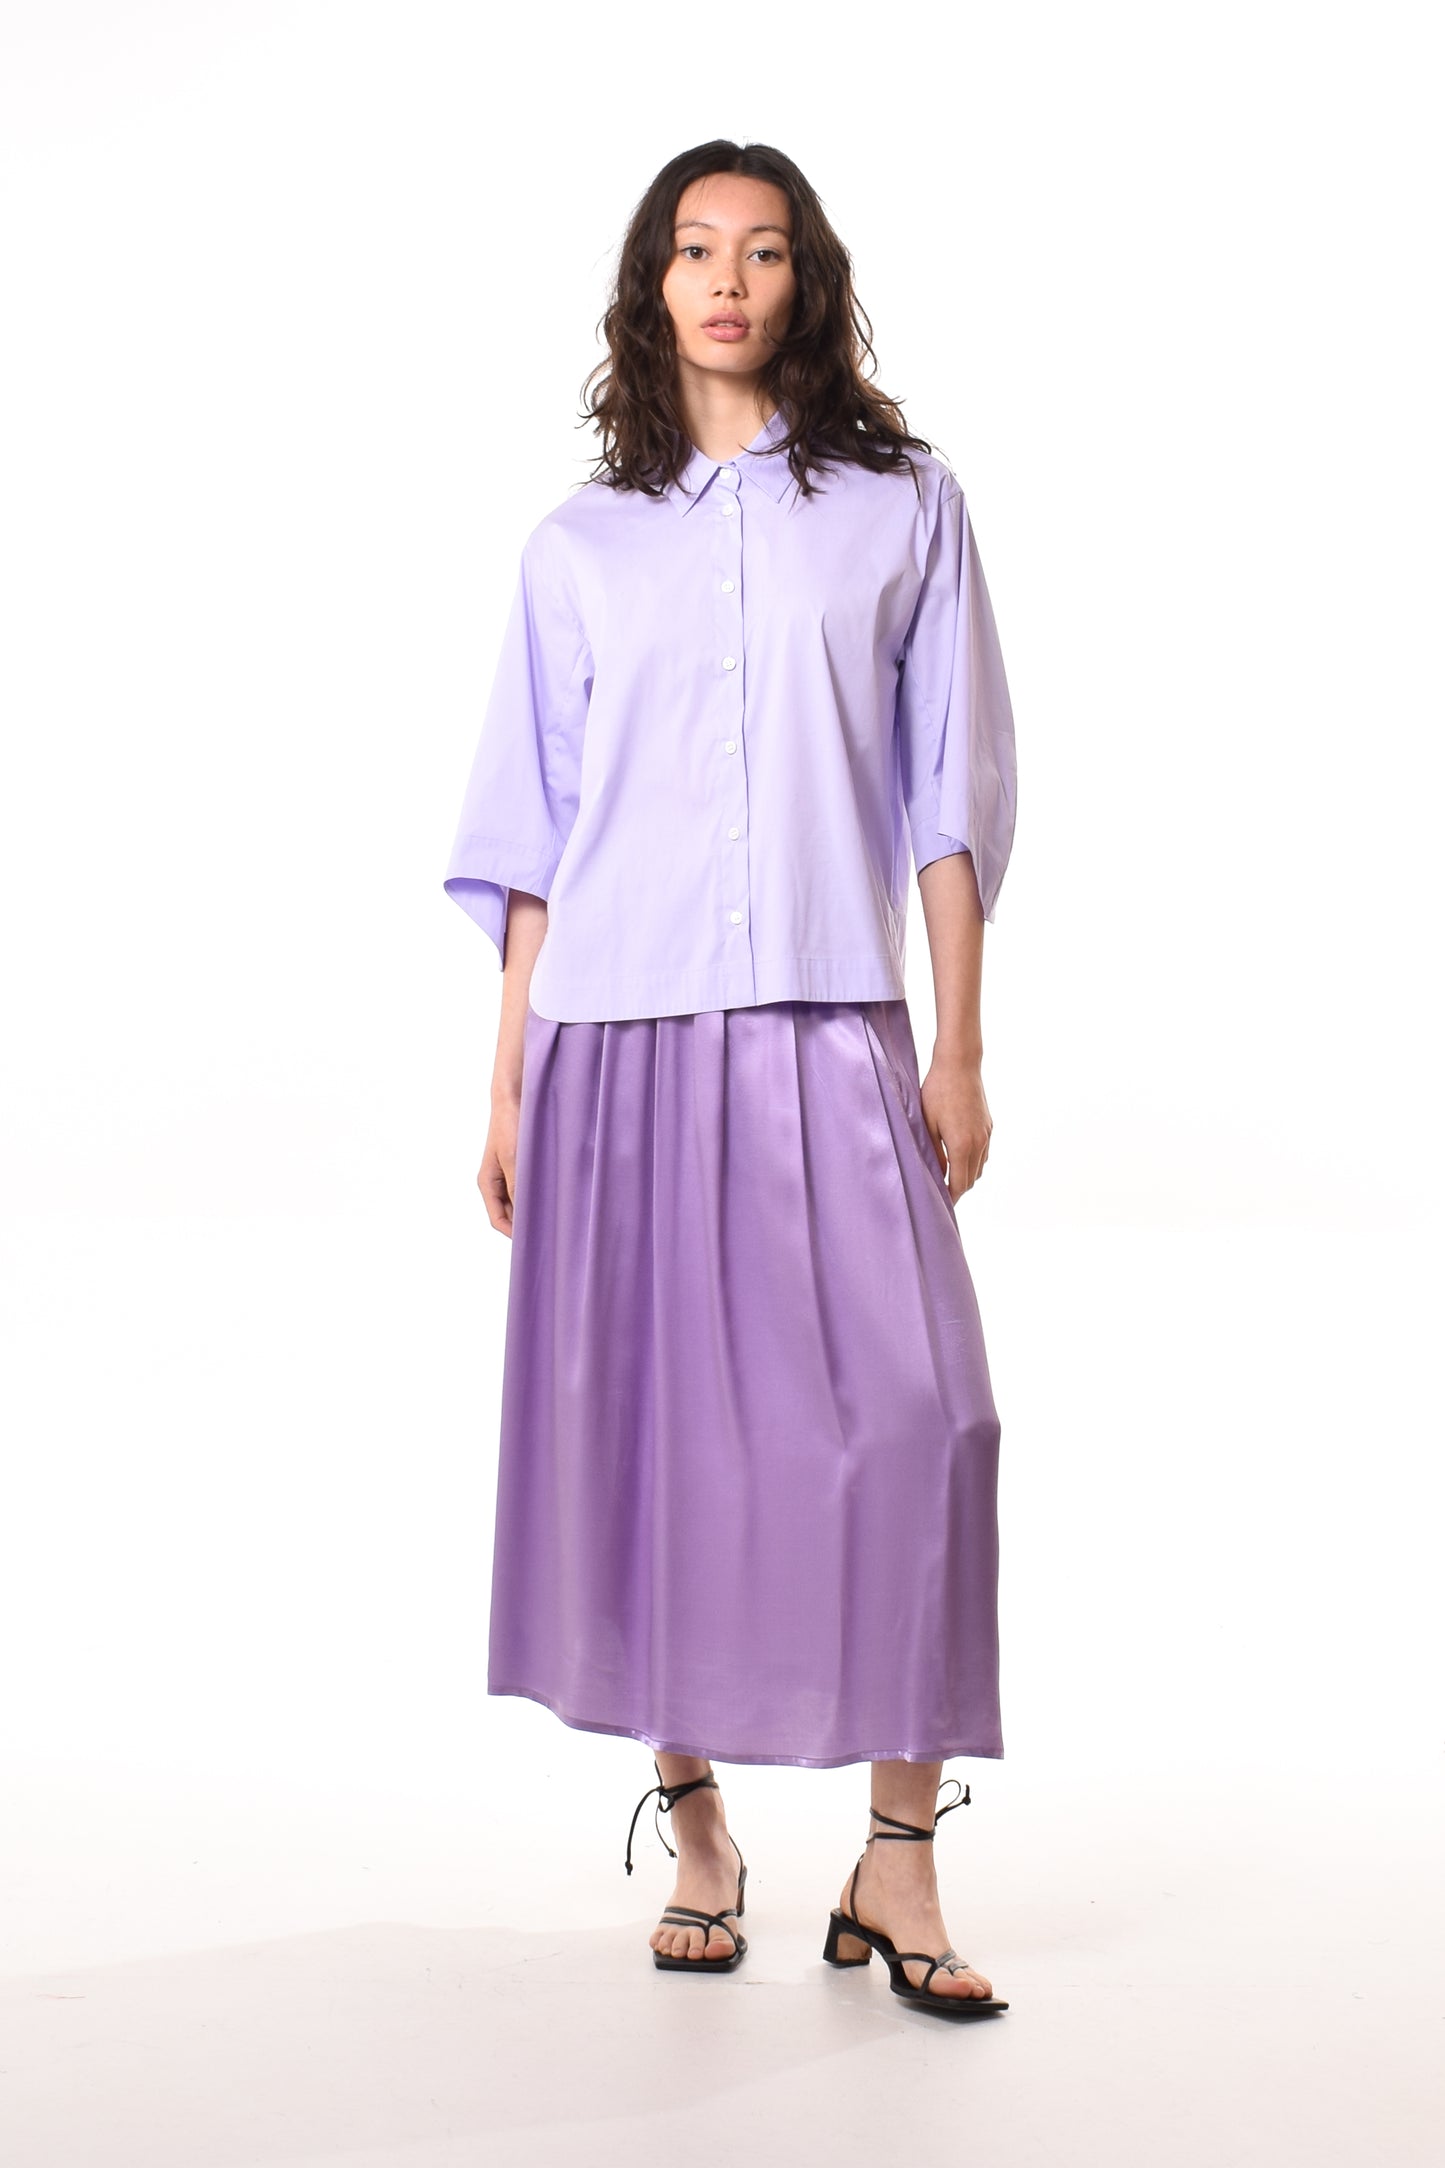 Alyza blouse in Light Purple